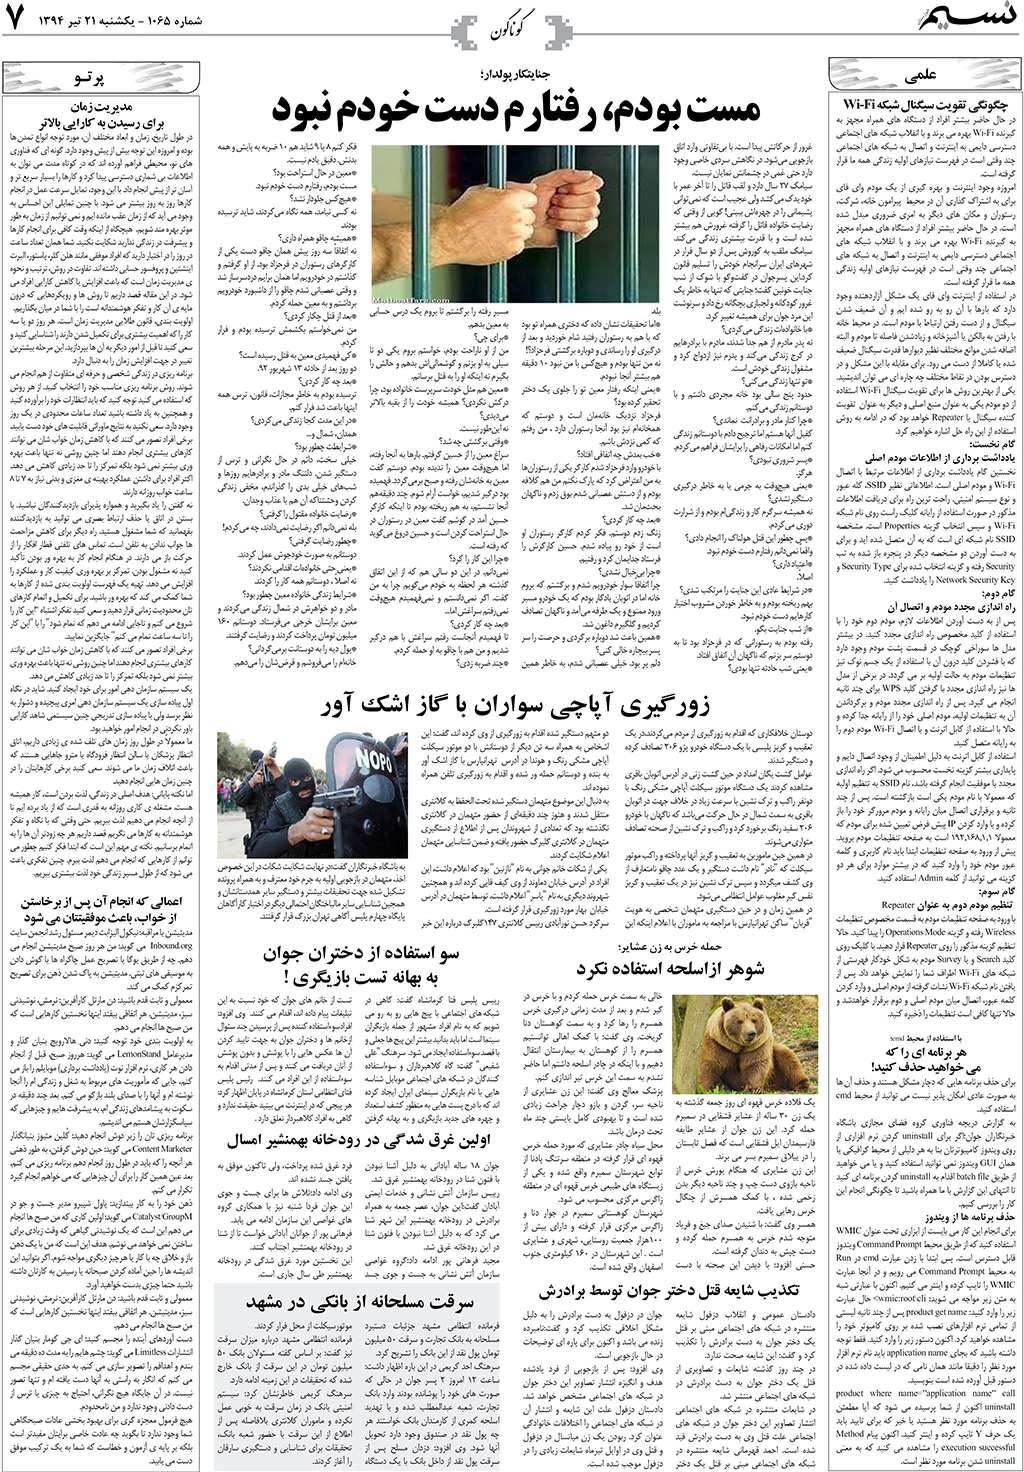 صفحه گوناگون روزنامه نسیم شماره 1065